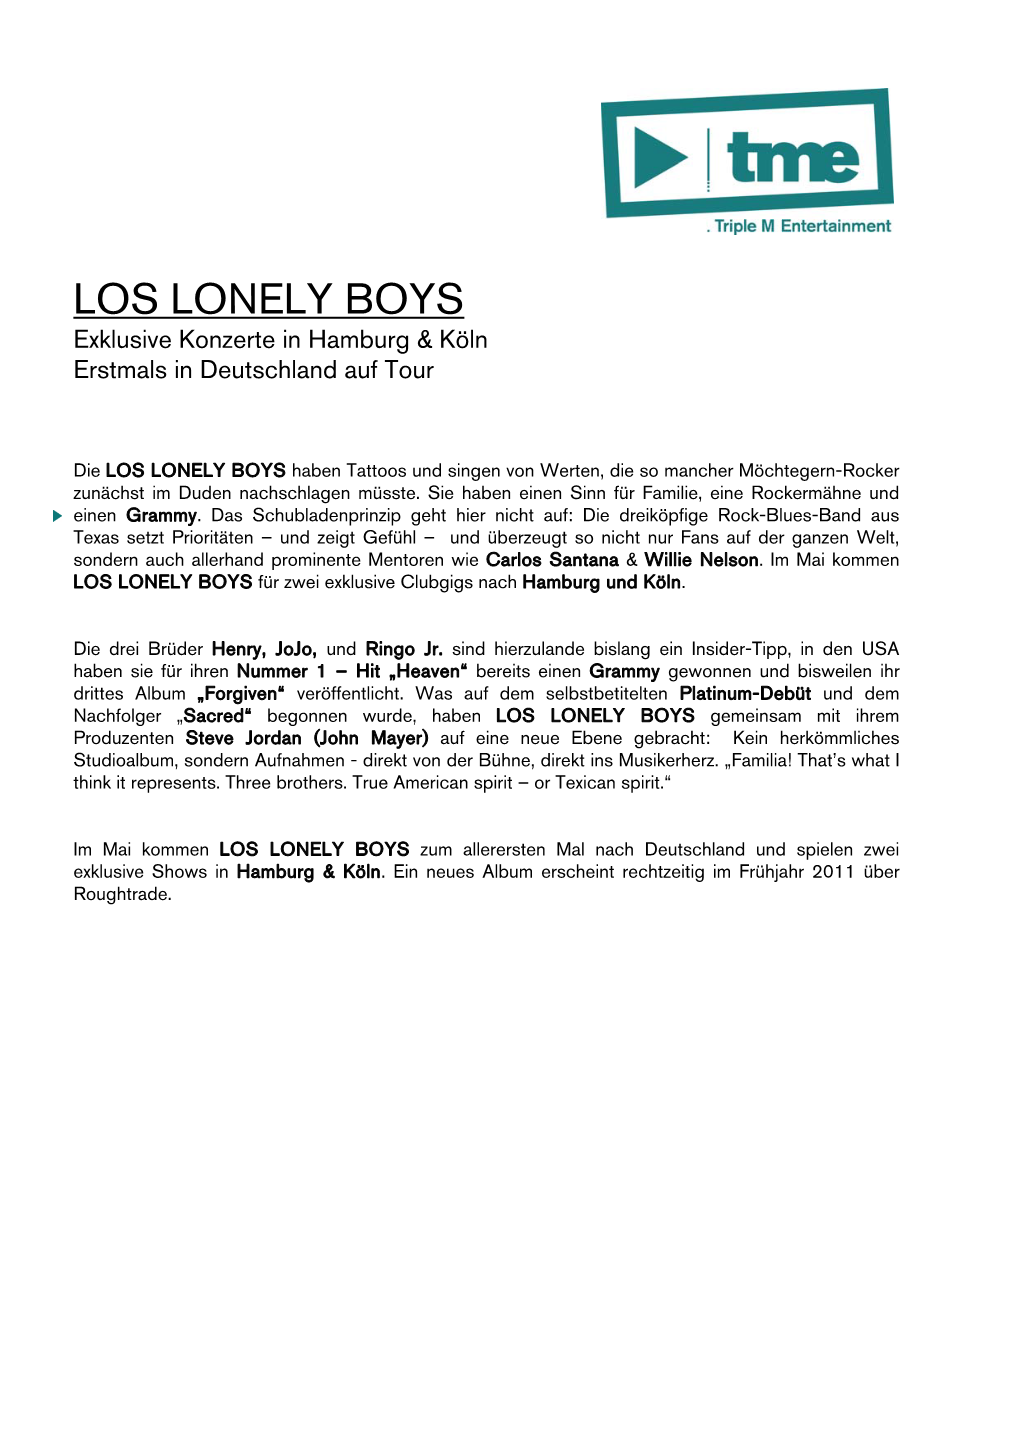 LOS LONELY BOYS Exklusive Konzerte in Hamburg & Köln Erstmals in Deutschland Auf Tour